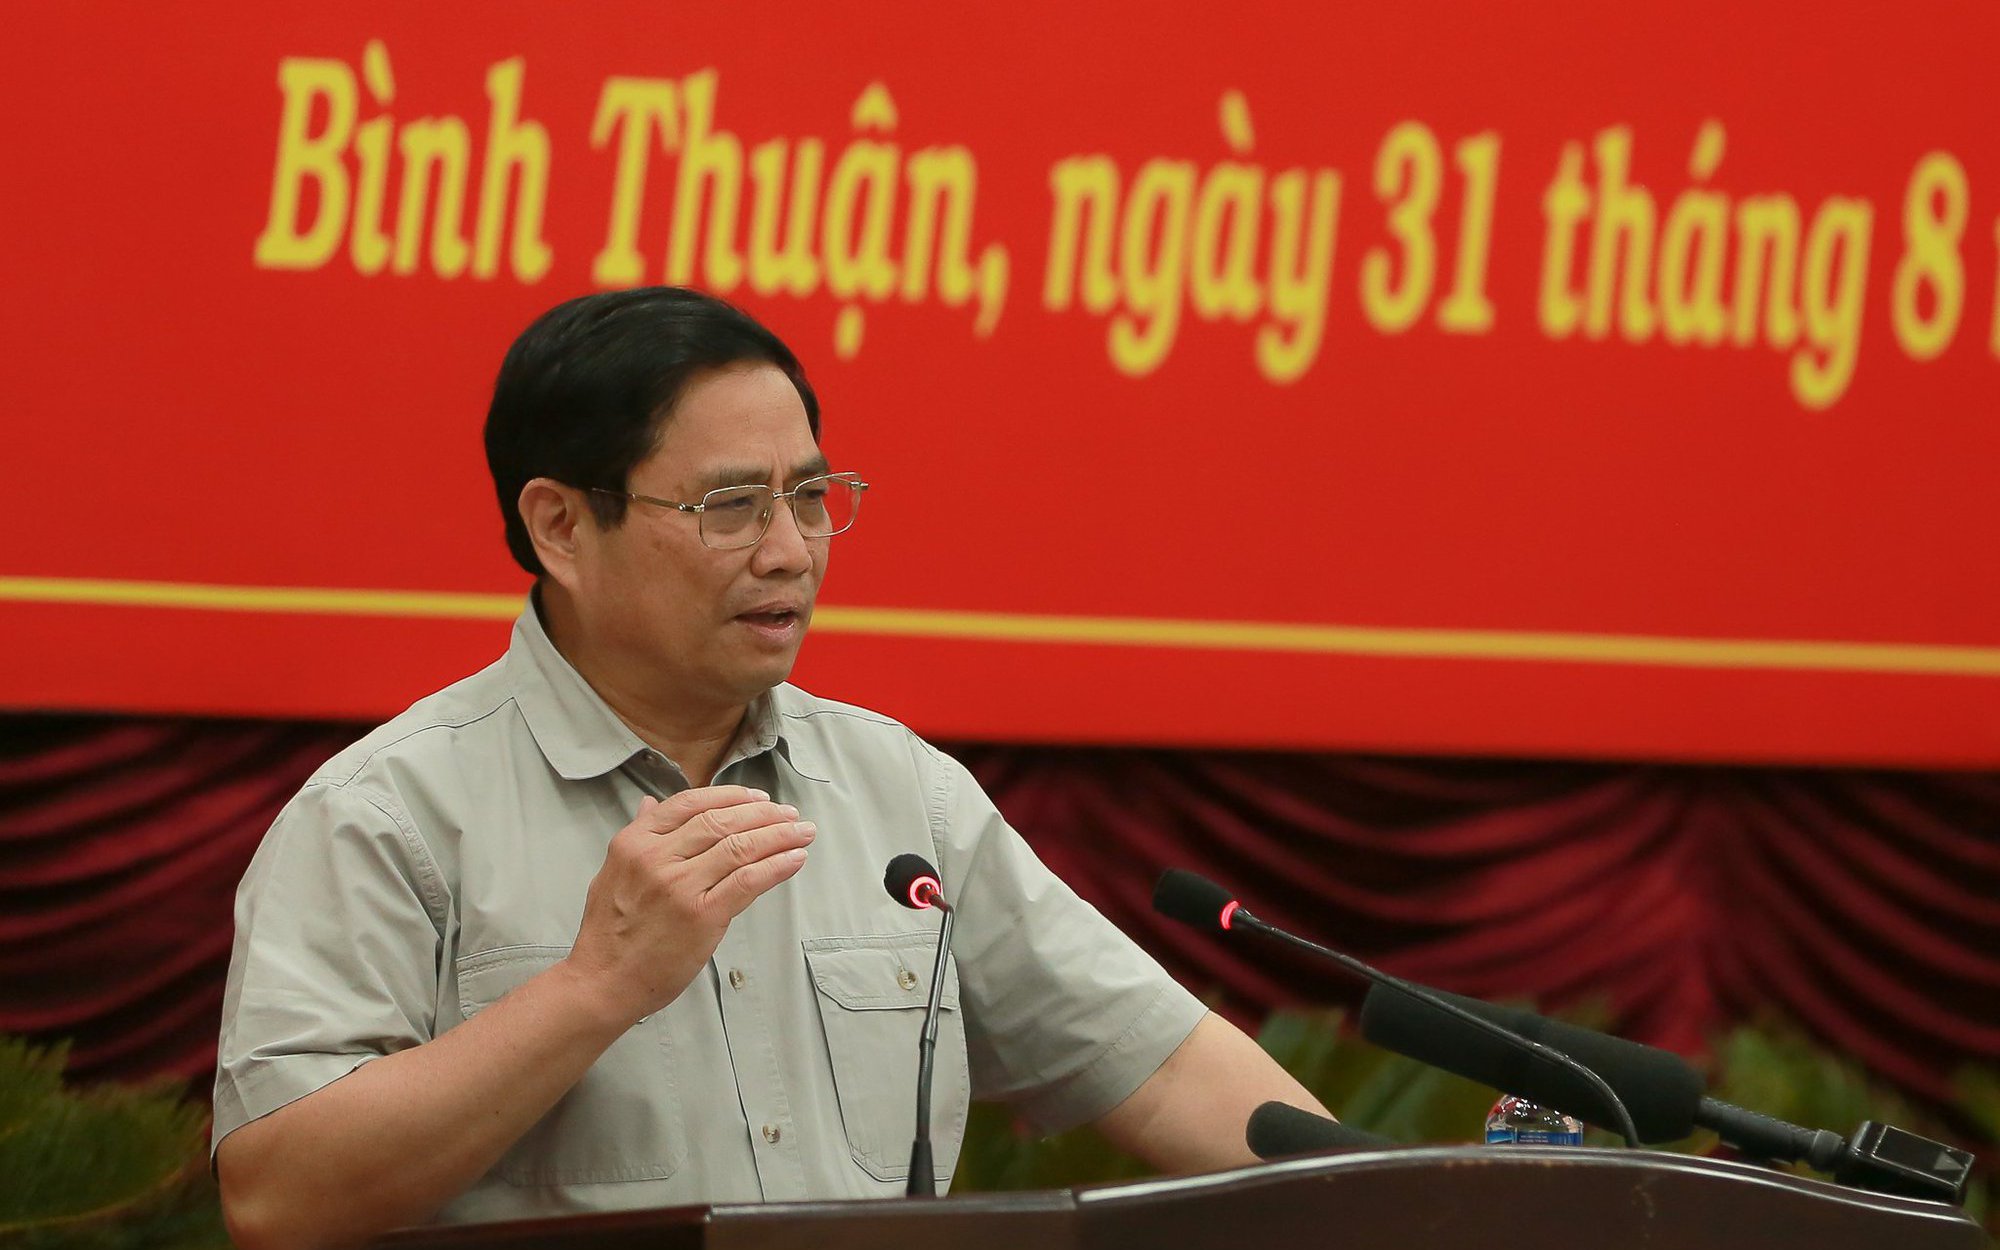 Thủ tướng Phạm Minh Chính: Bình Thuận phải phát triển xanh, nhanh, bền vững